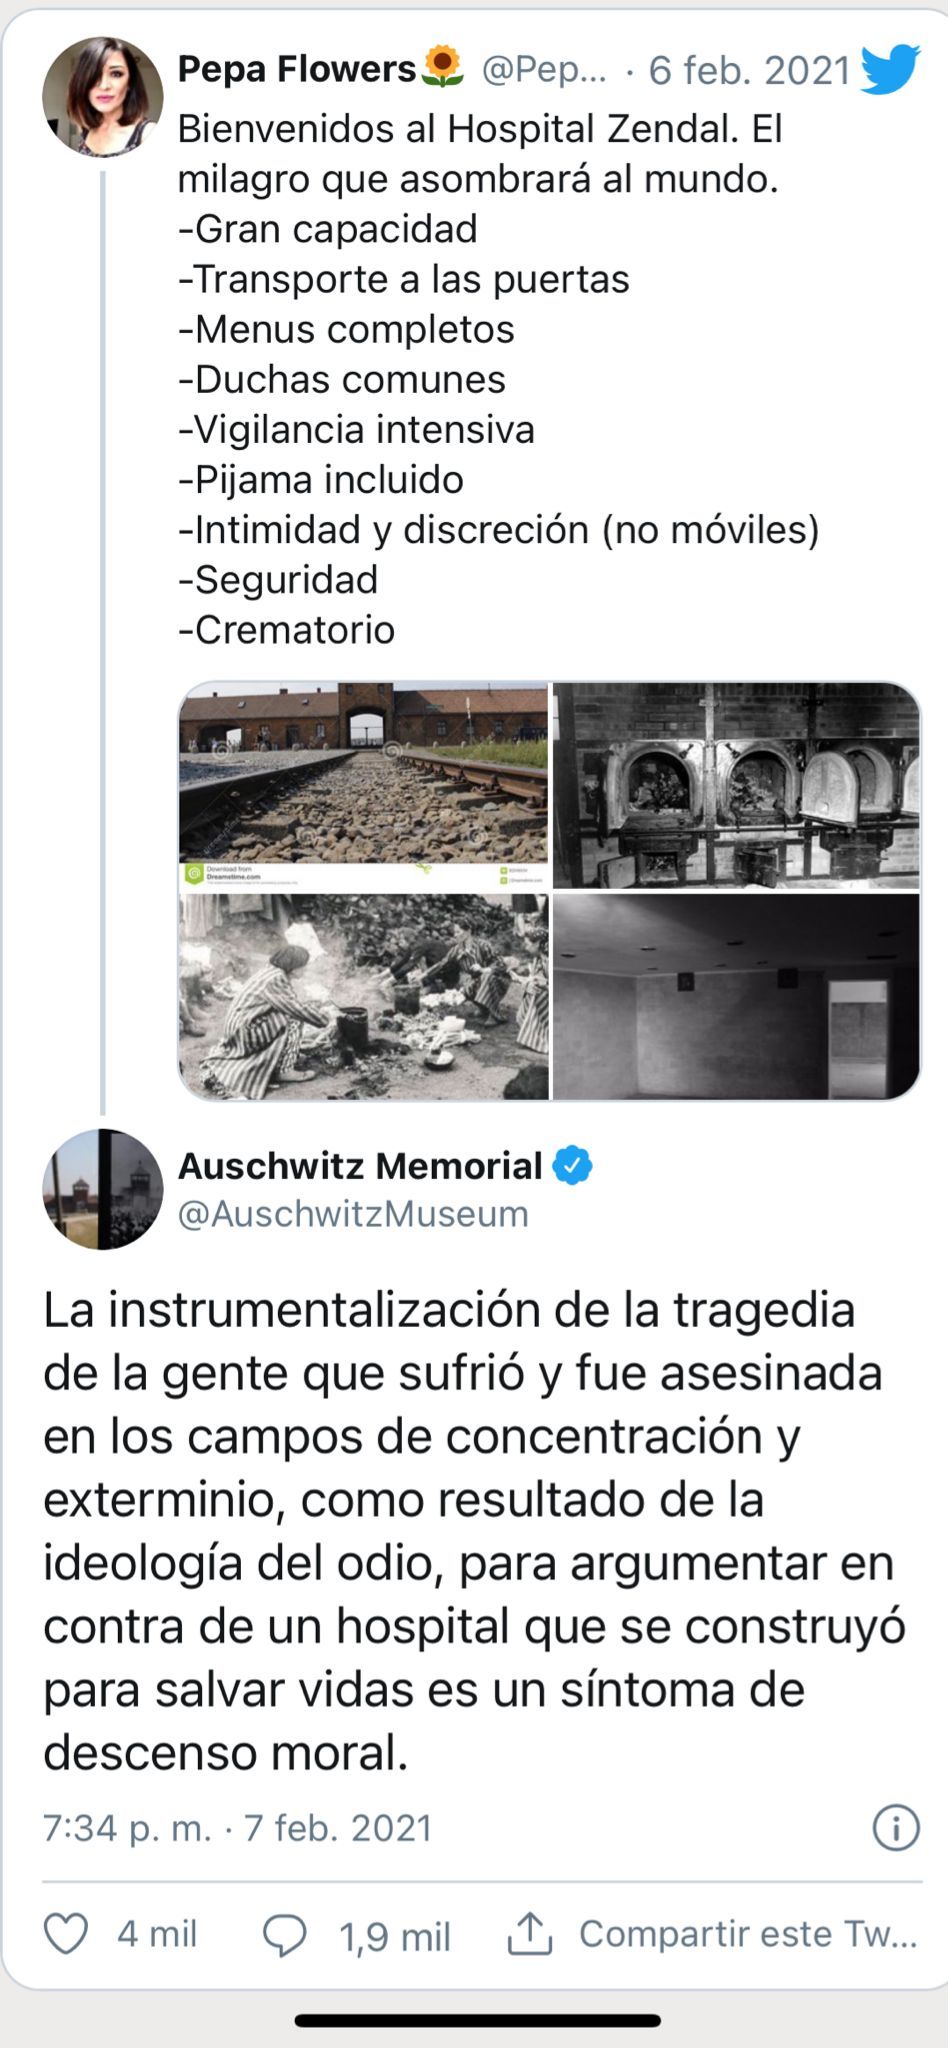 Tweet del Memorial de Auschwitz respondiendo